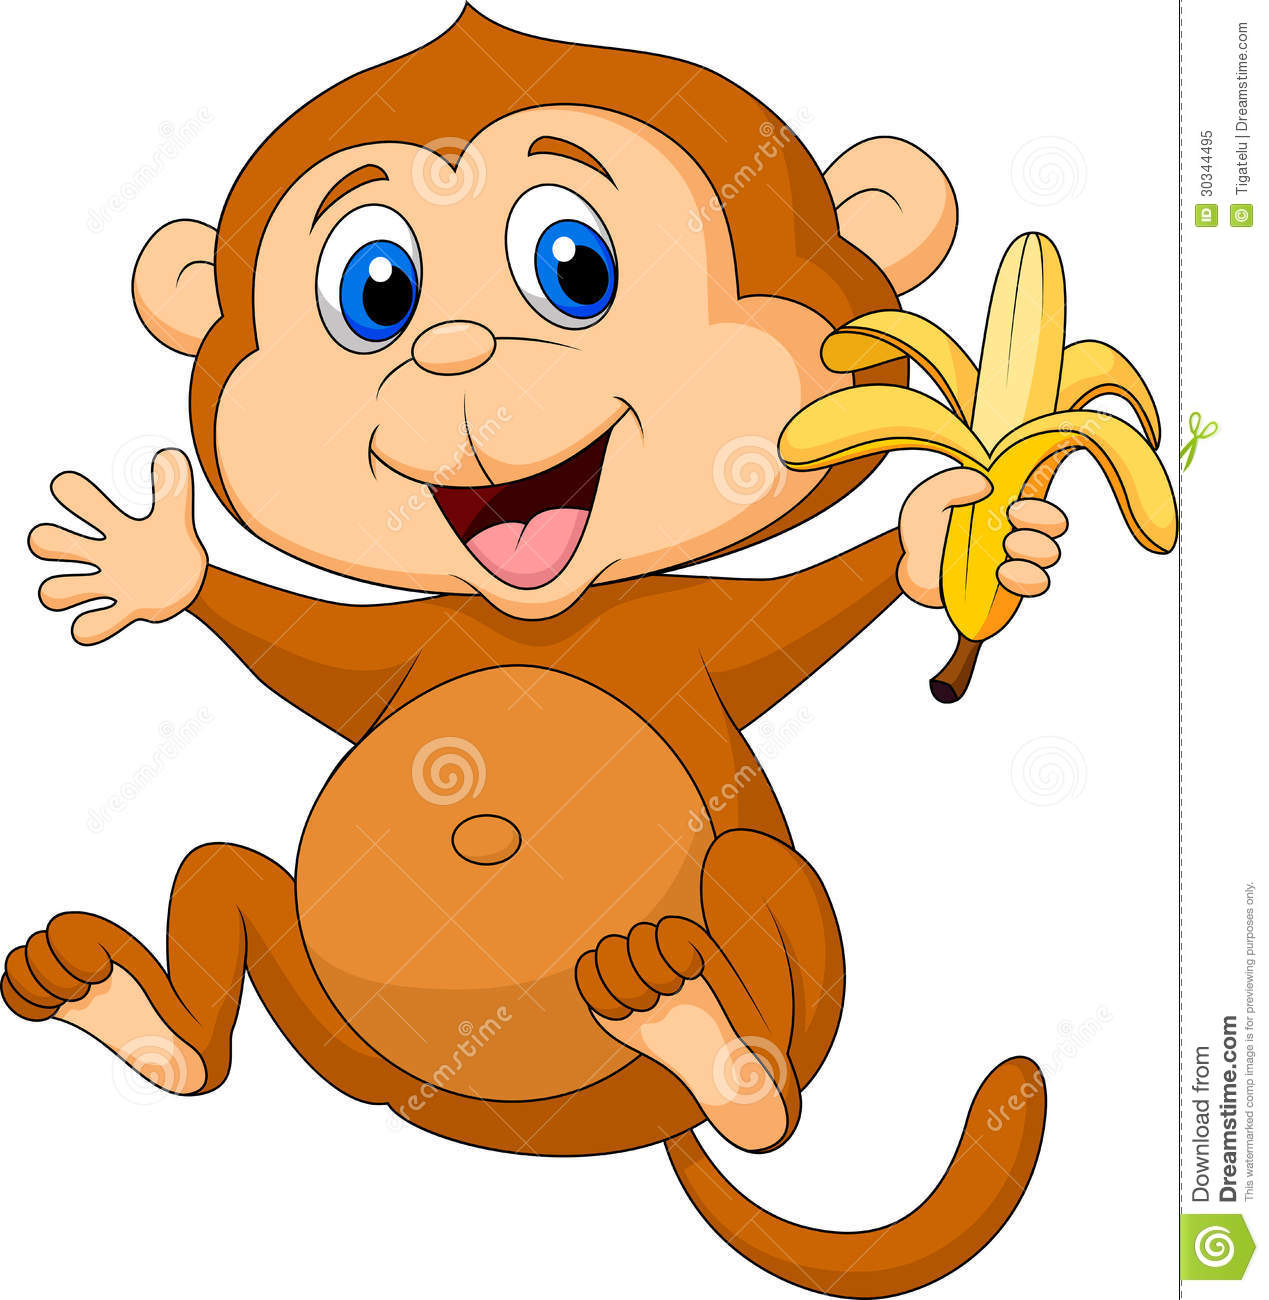 monkey animated clipart - photo #43